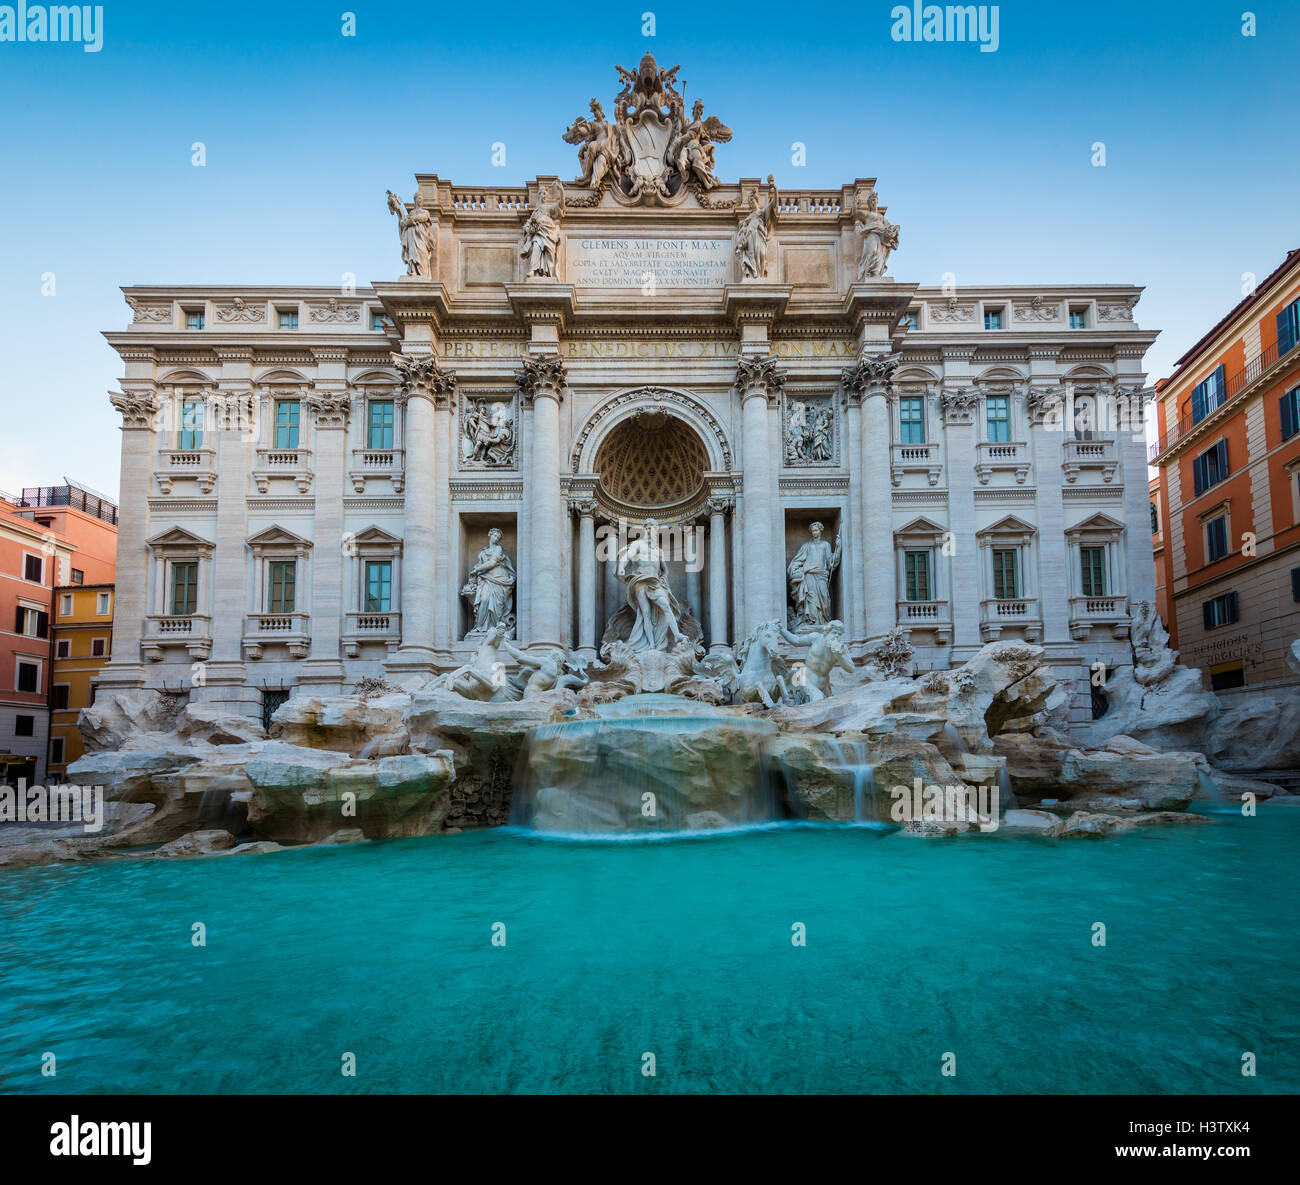 Fontaine de Trevi (Italien : Fontana di Trevi) est une fontaine dans le quartier de Trevi à Rome, Italie Banque D'Images